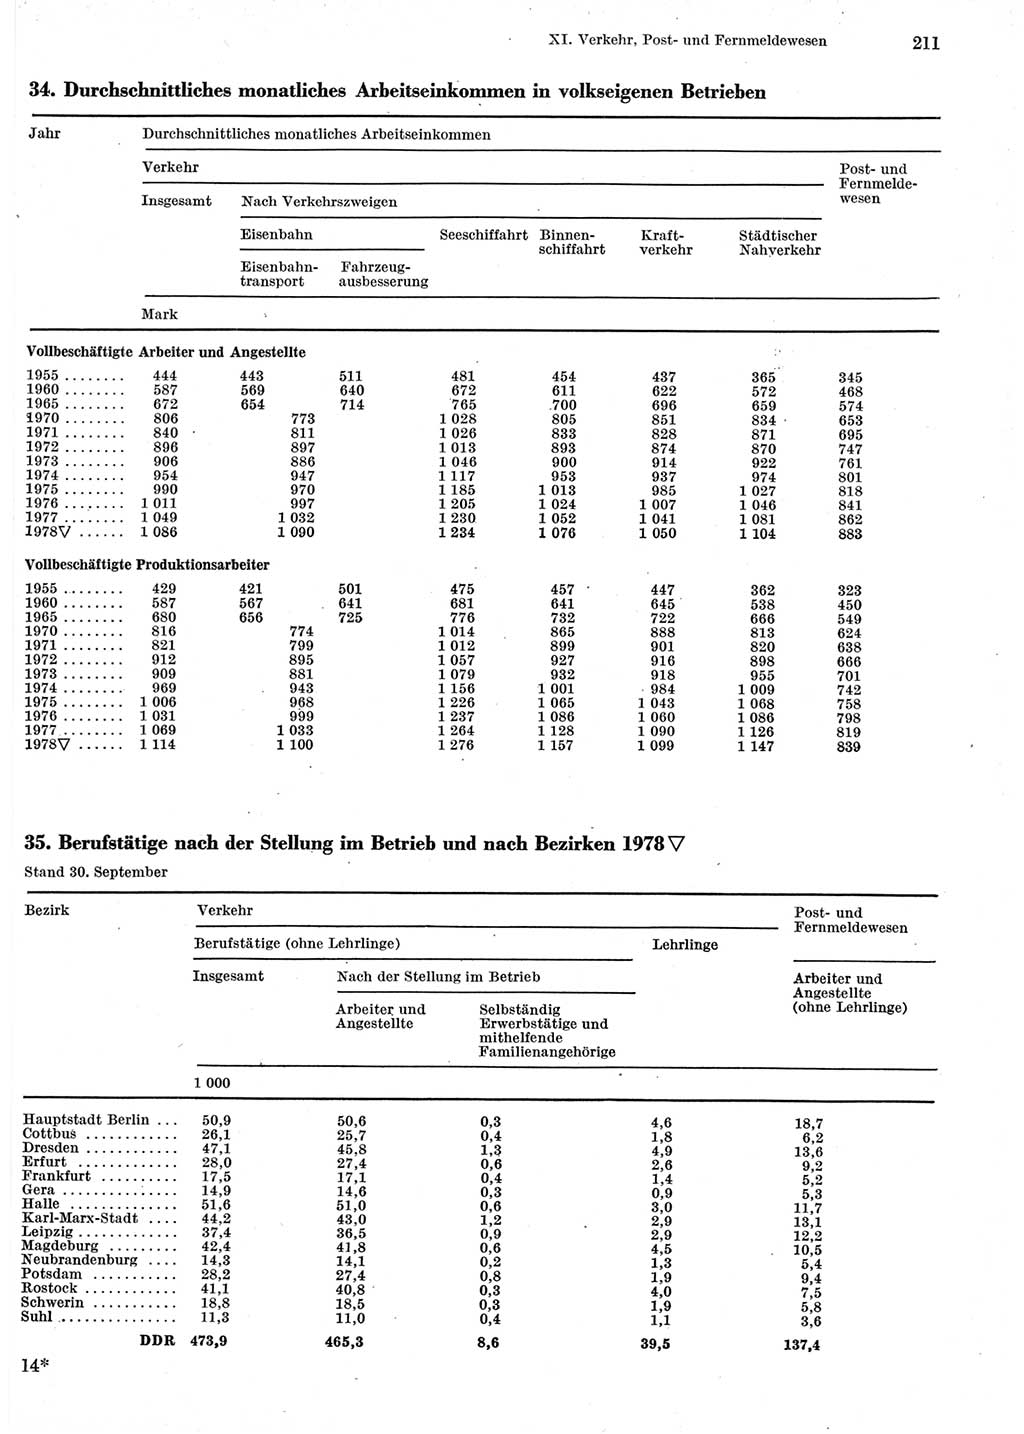 Statistisches Jahrbuch der Deutschen Demokratischen Republik (DDR) 1979, Seite 211 (Stat. Jb. DDR 1979, S. 211)